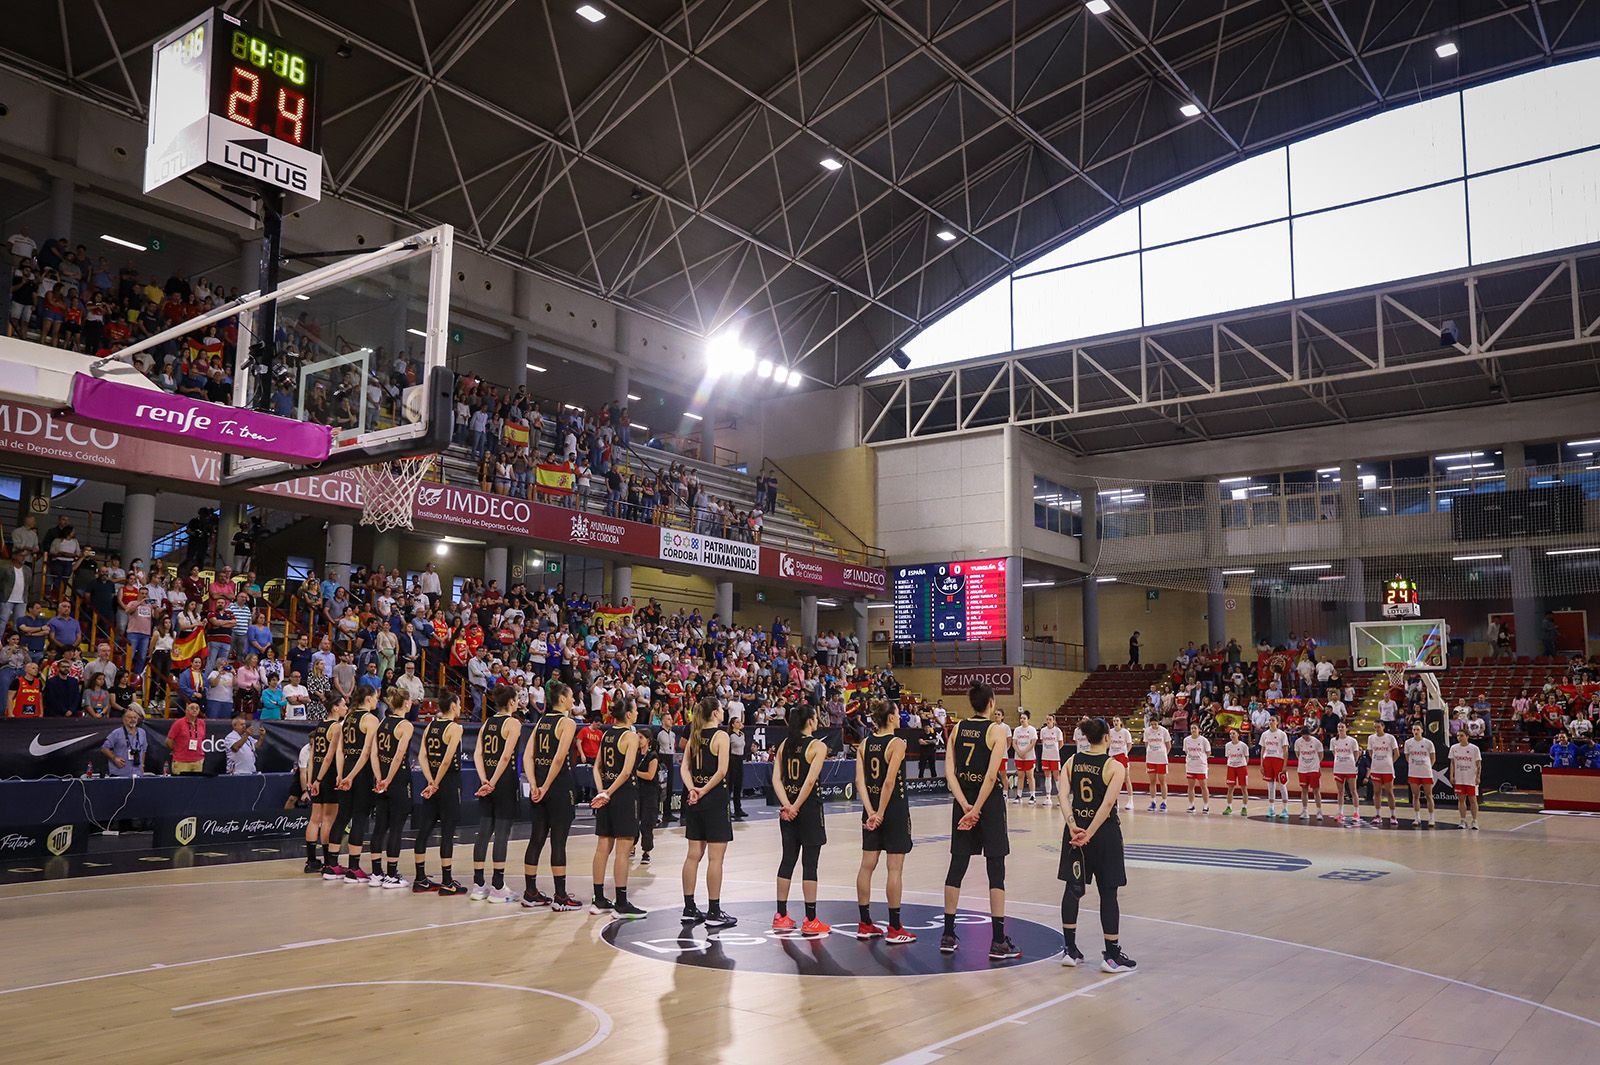 La selección española de baloncesto ante Turquía, en imágenes